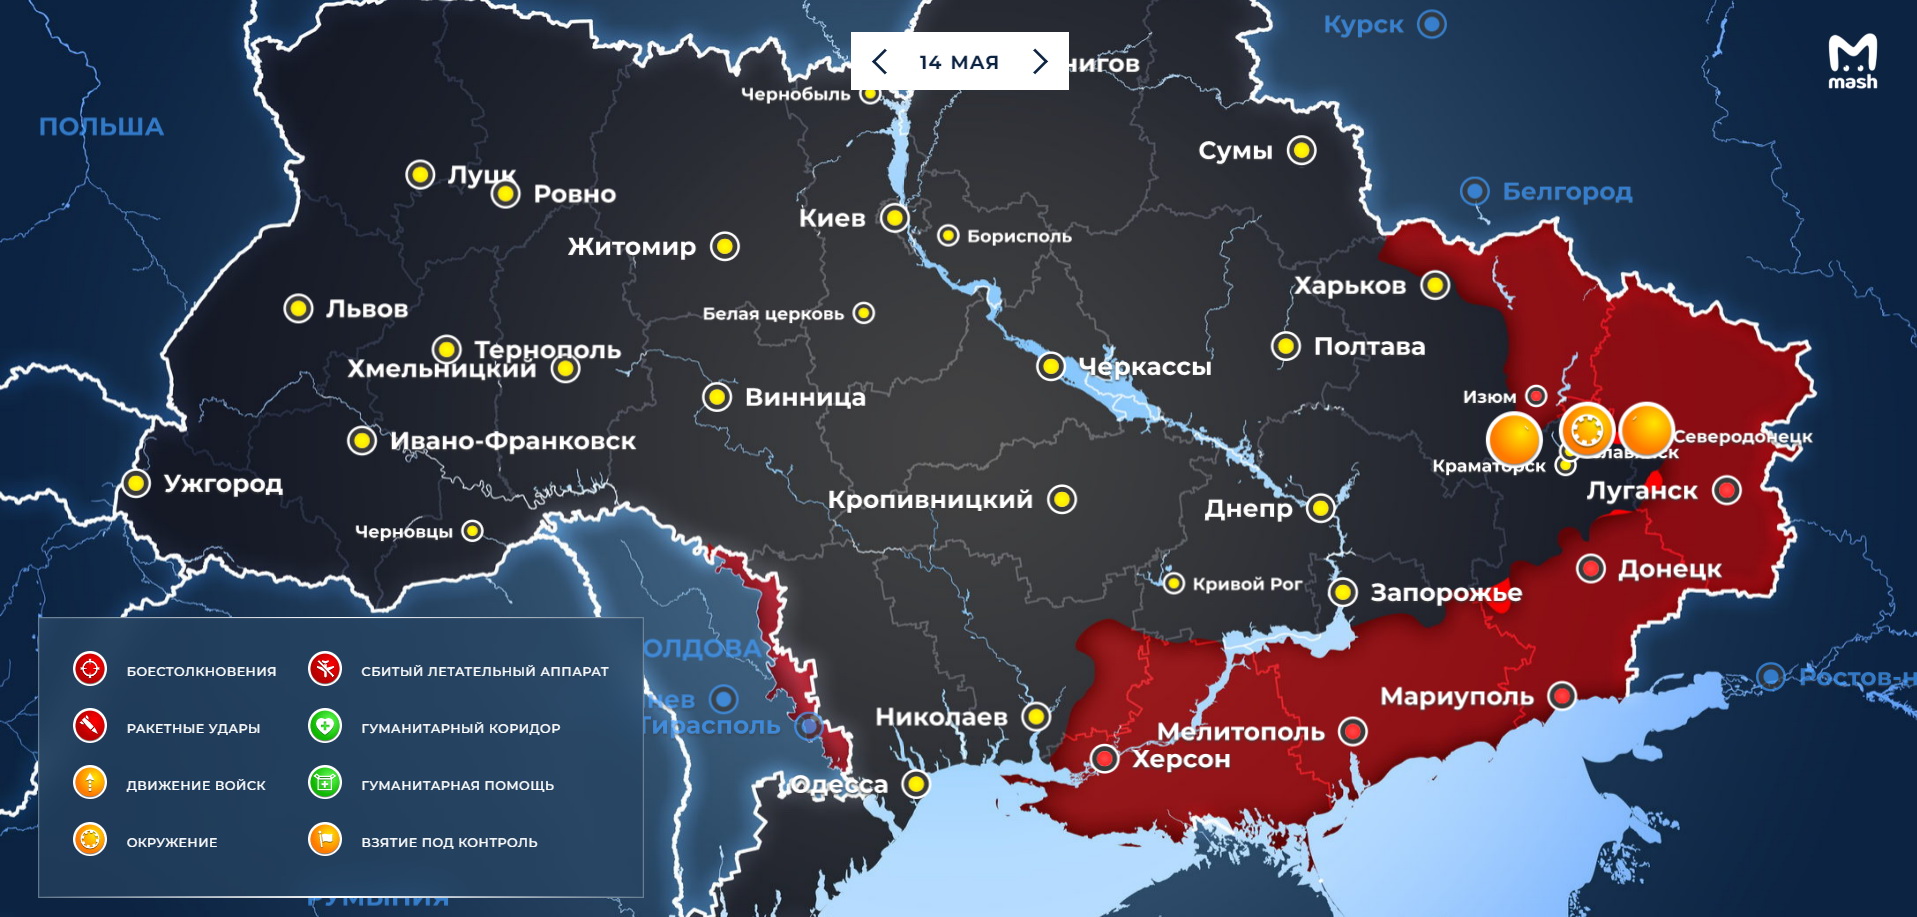 Карта боевых действий на Украине 15 мая